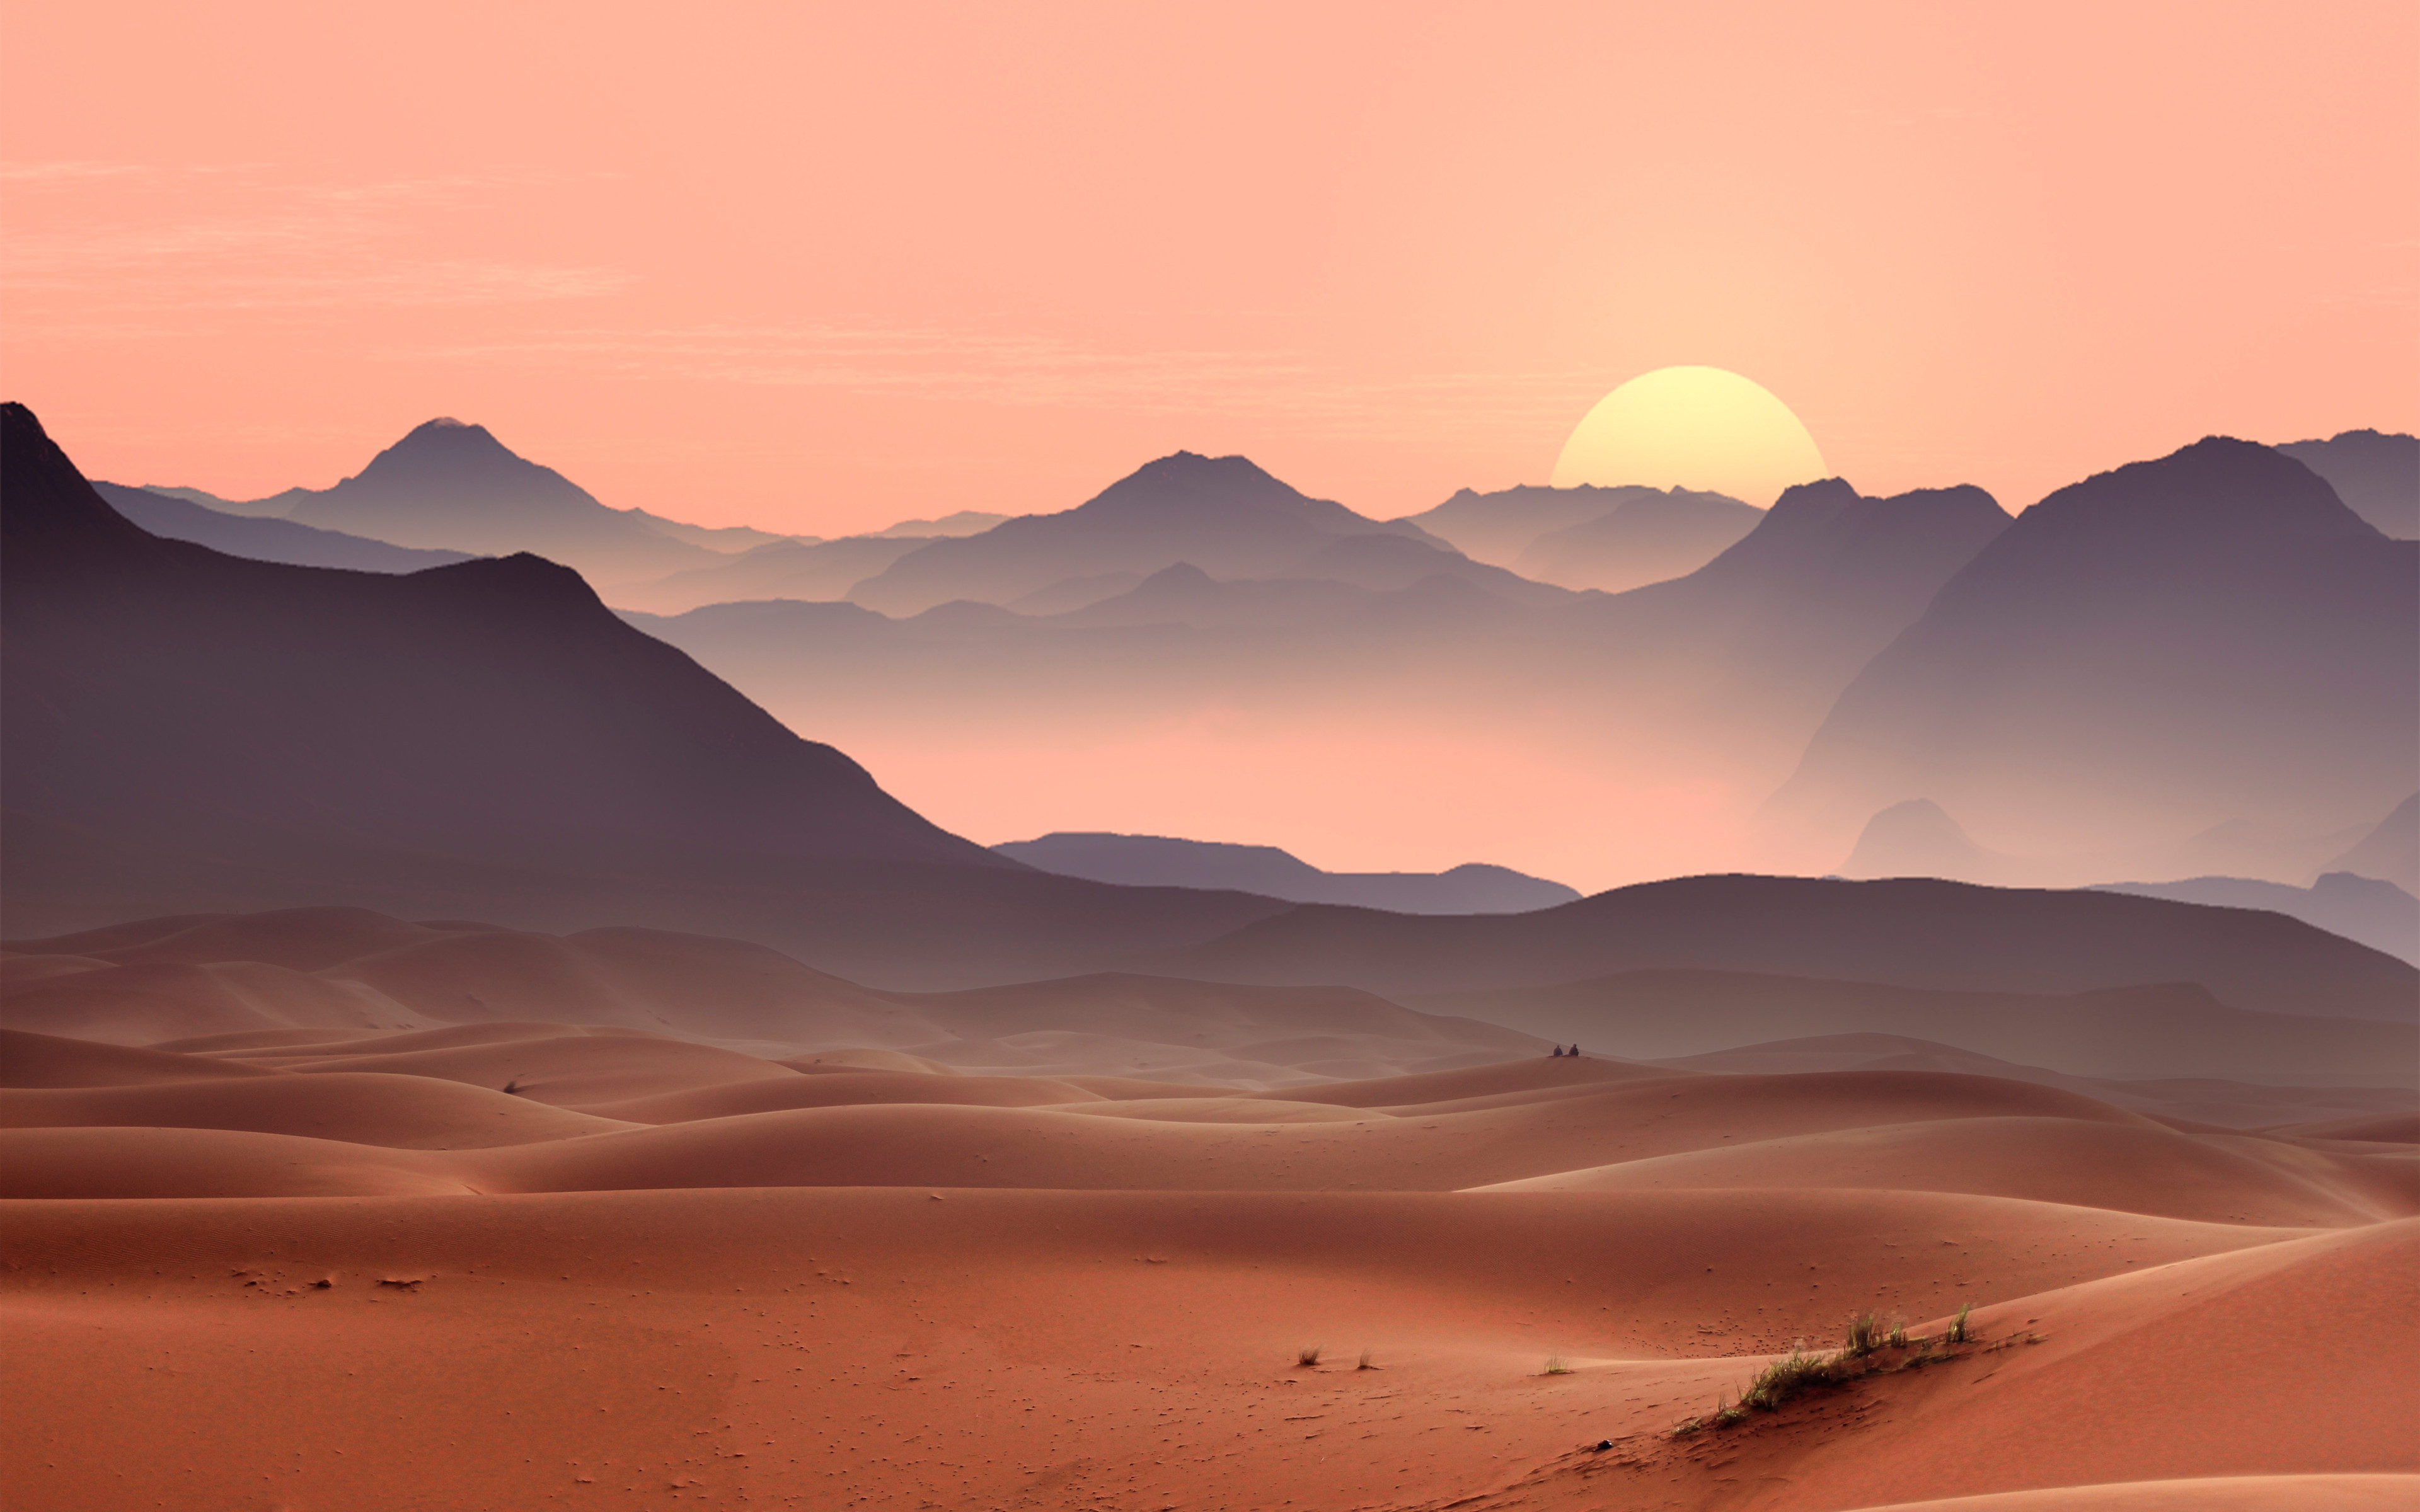 Sunset on the desert dunes wallpaper 3840x2400